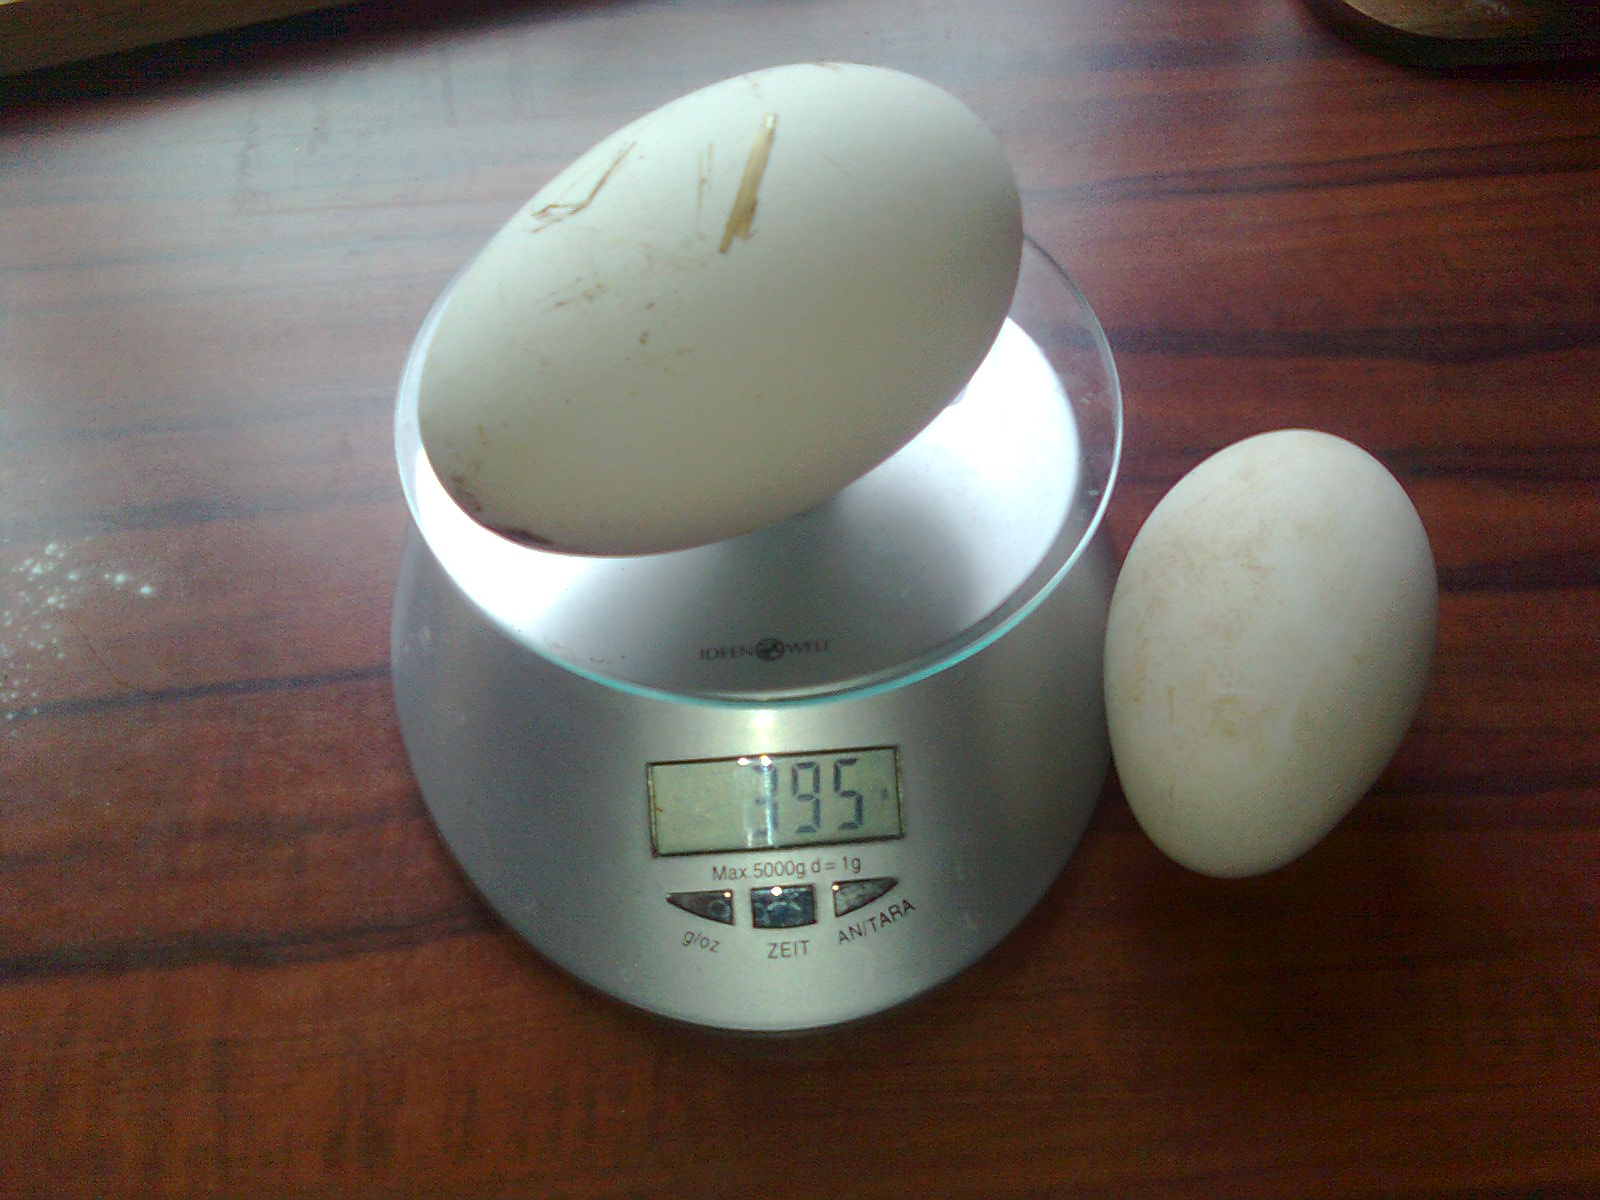 395g Ei von einer Pommerngans, das rechte Ei hat 185g